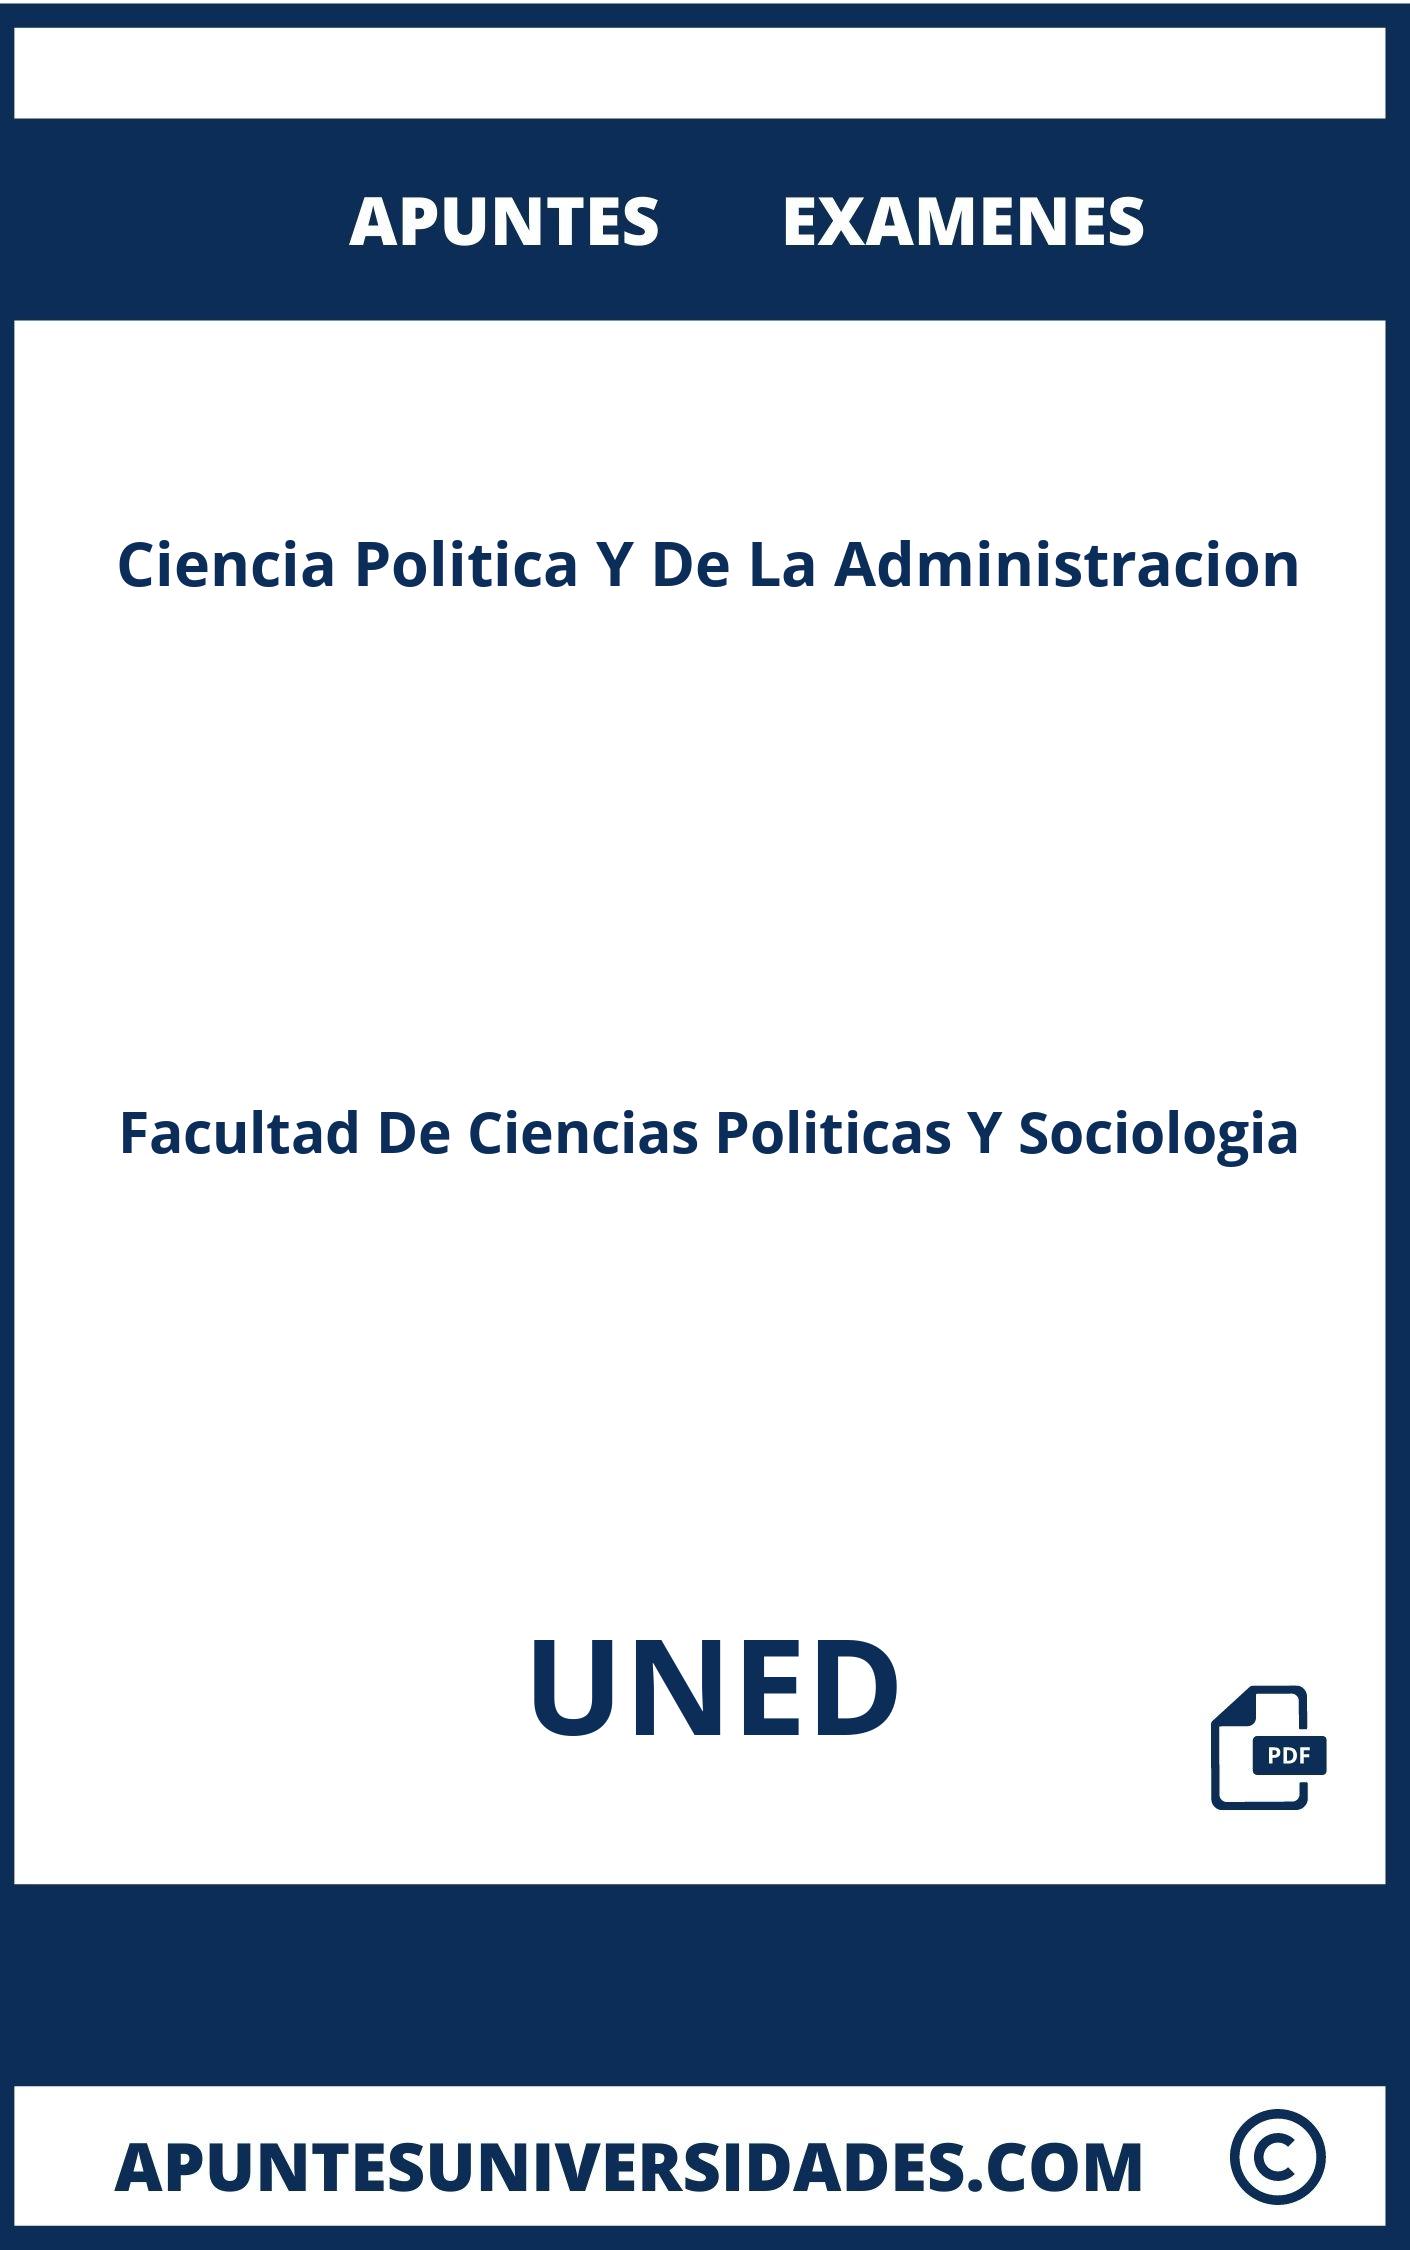 Ciencia Politica Y De La Administracion UNED Apuntes Examenes